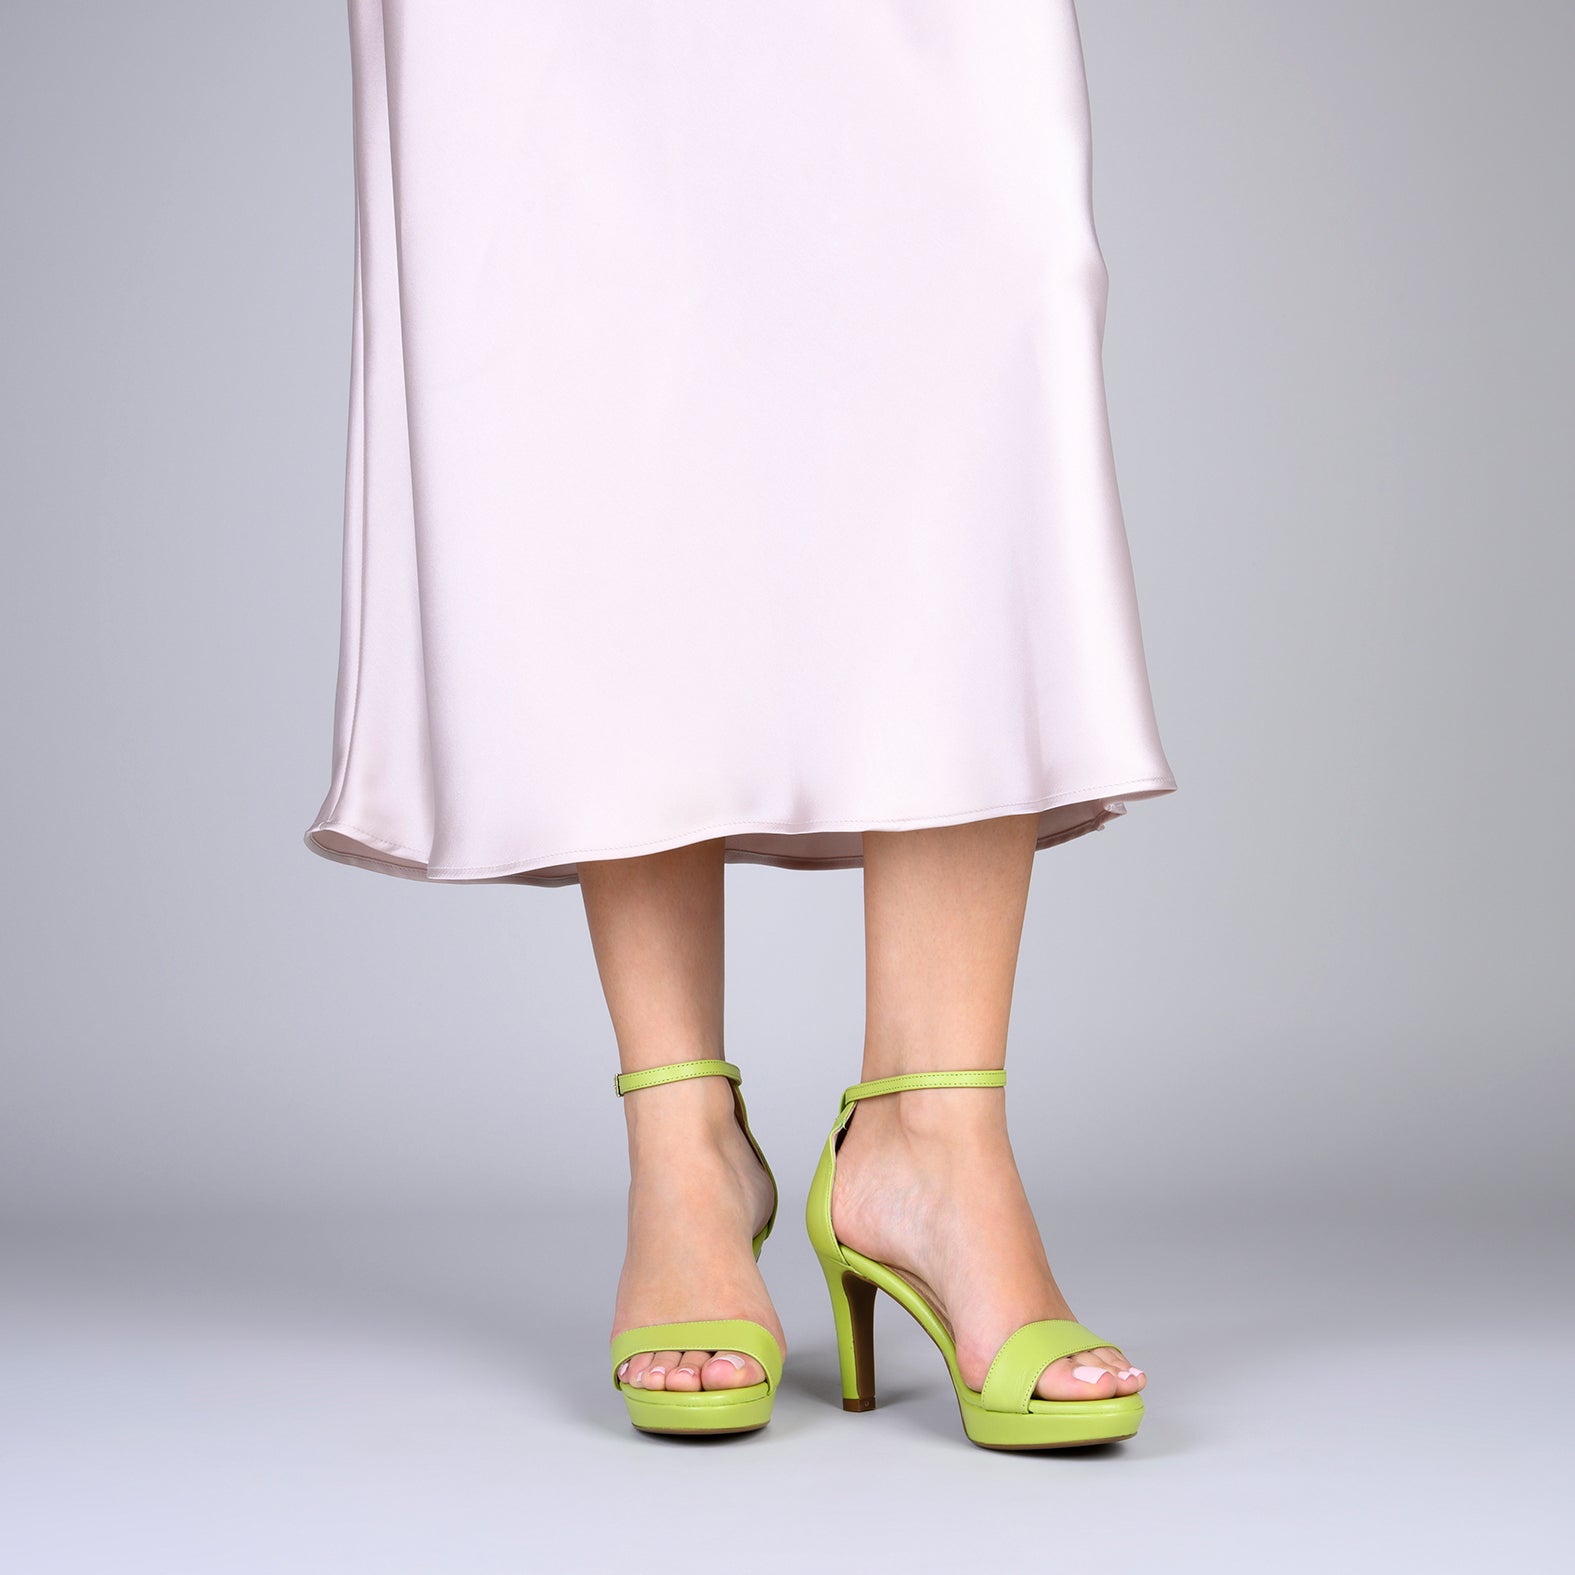 PARTY – GREEN high-heeled platform sandals